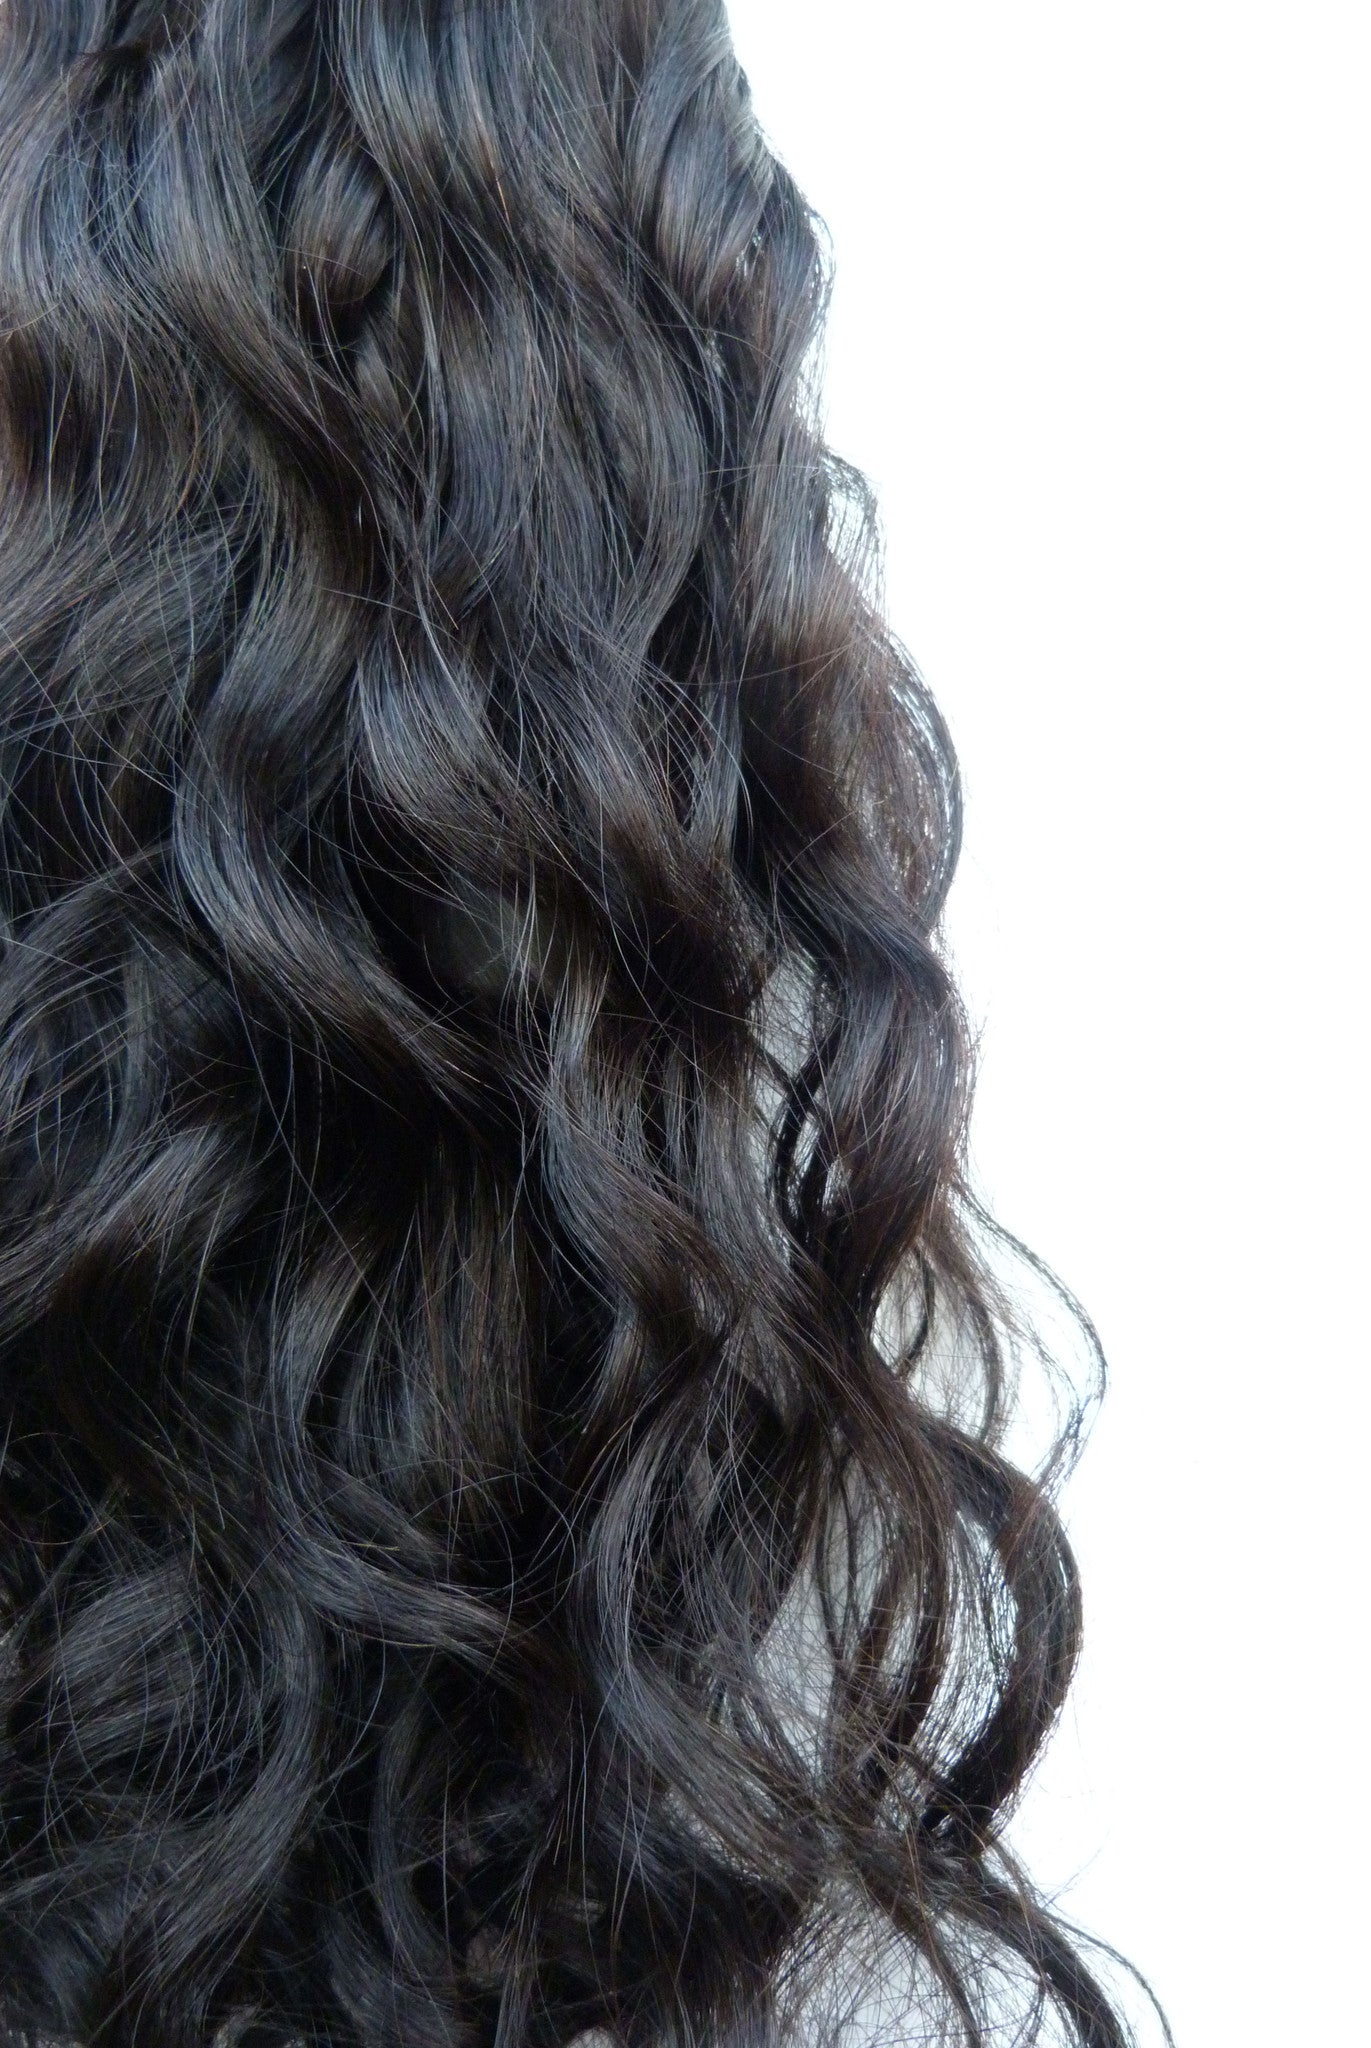 Brasilianische Echthaarverlängerungen – Micro-Loop-Extensions – Virgin Hair & Beauty, die besten Haarverlängerungen, echtes Echthaar.